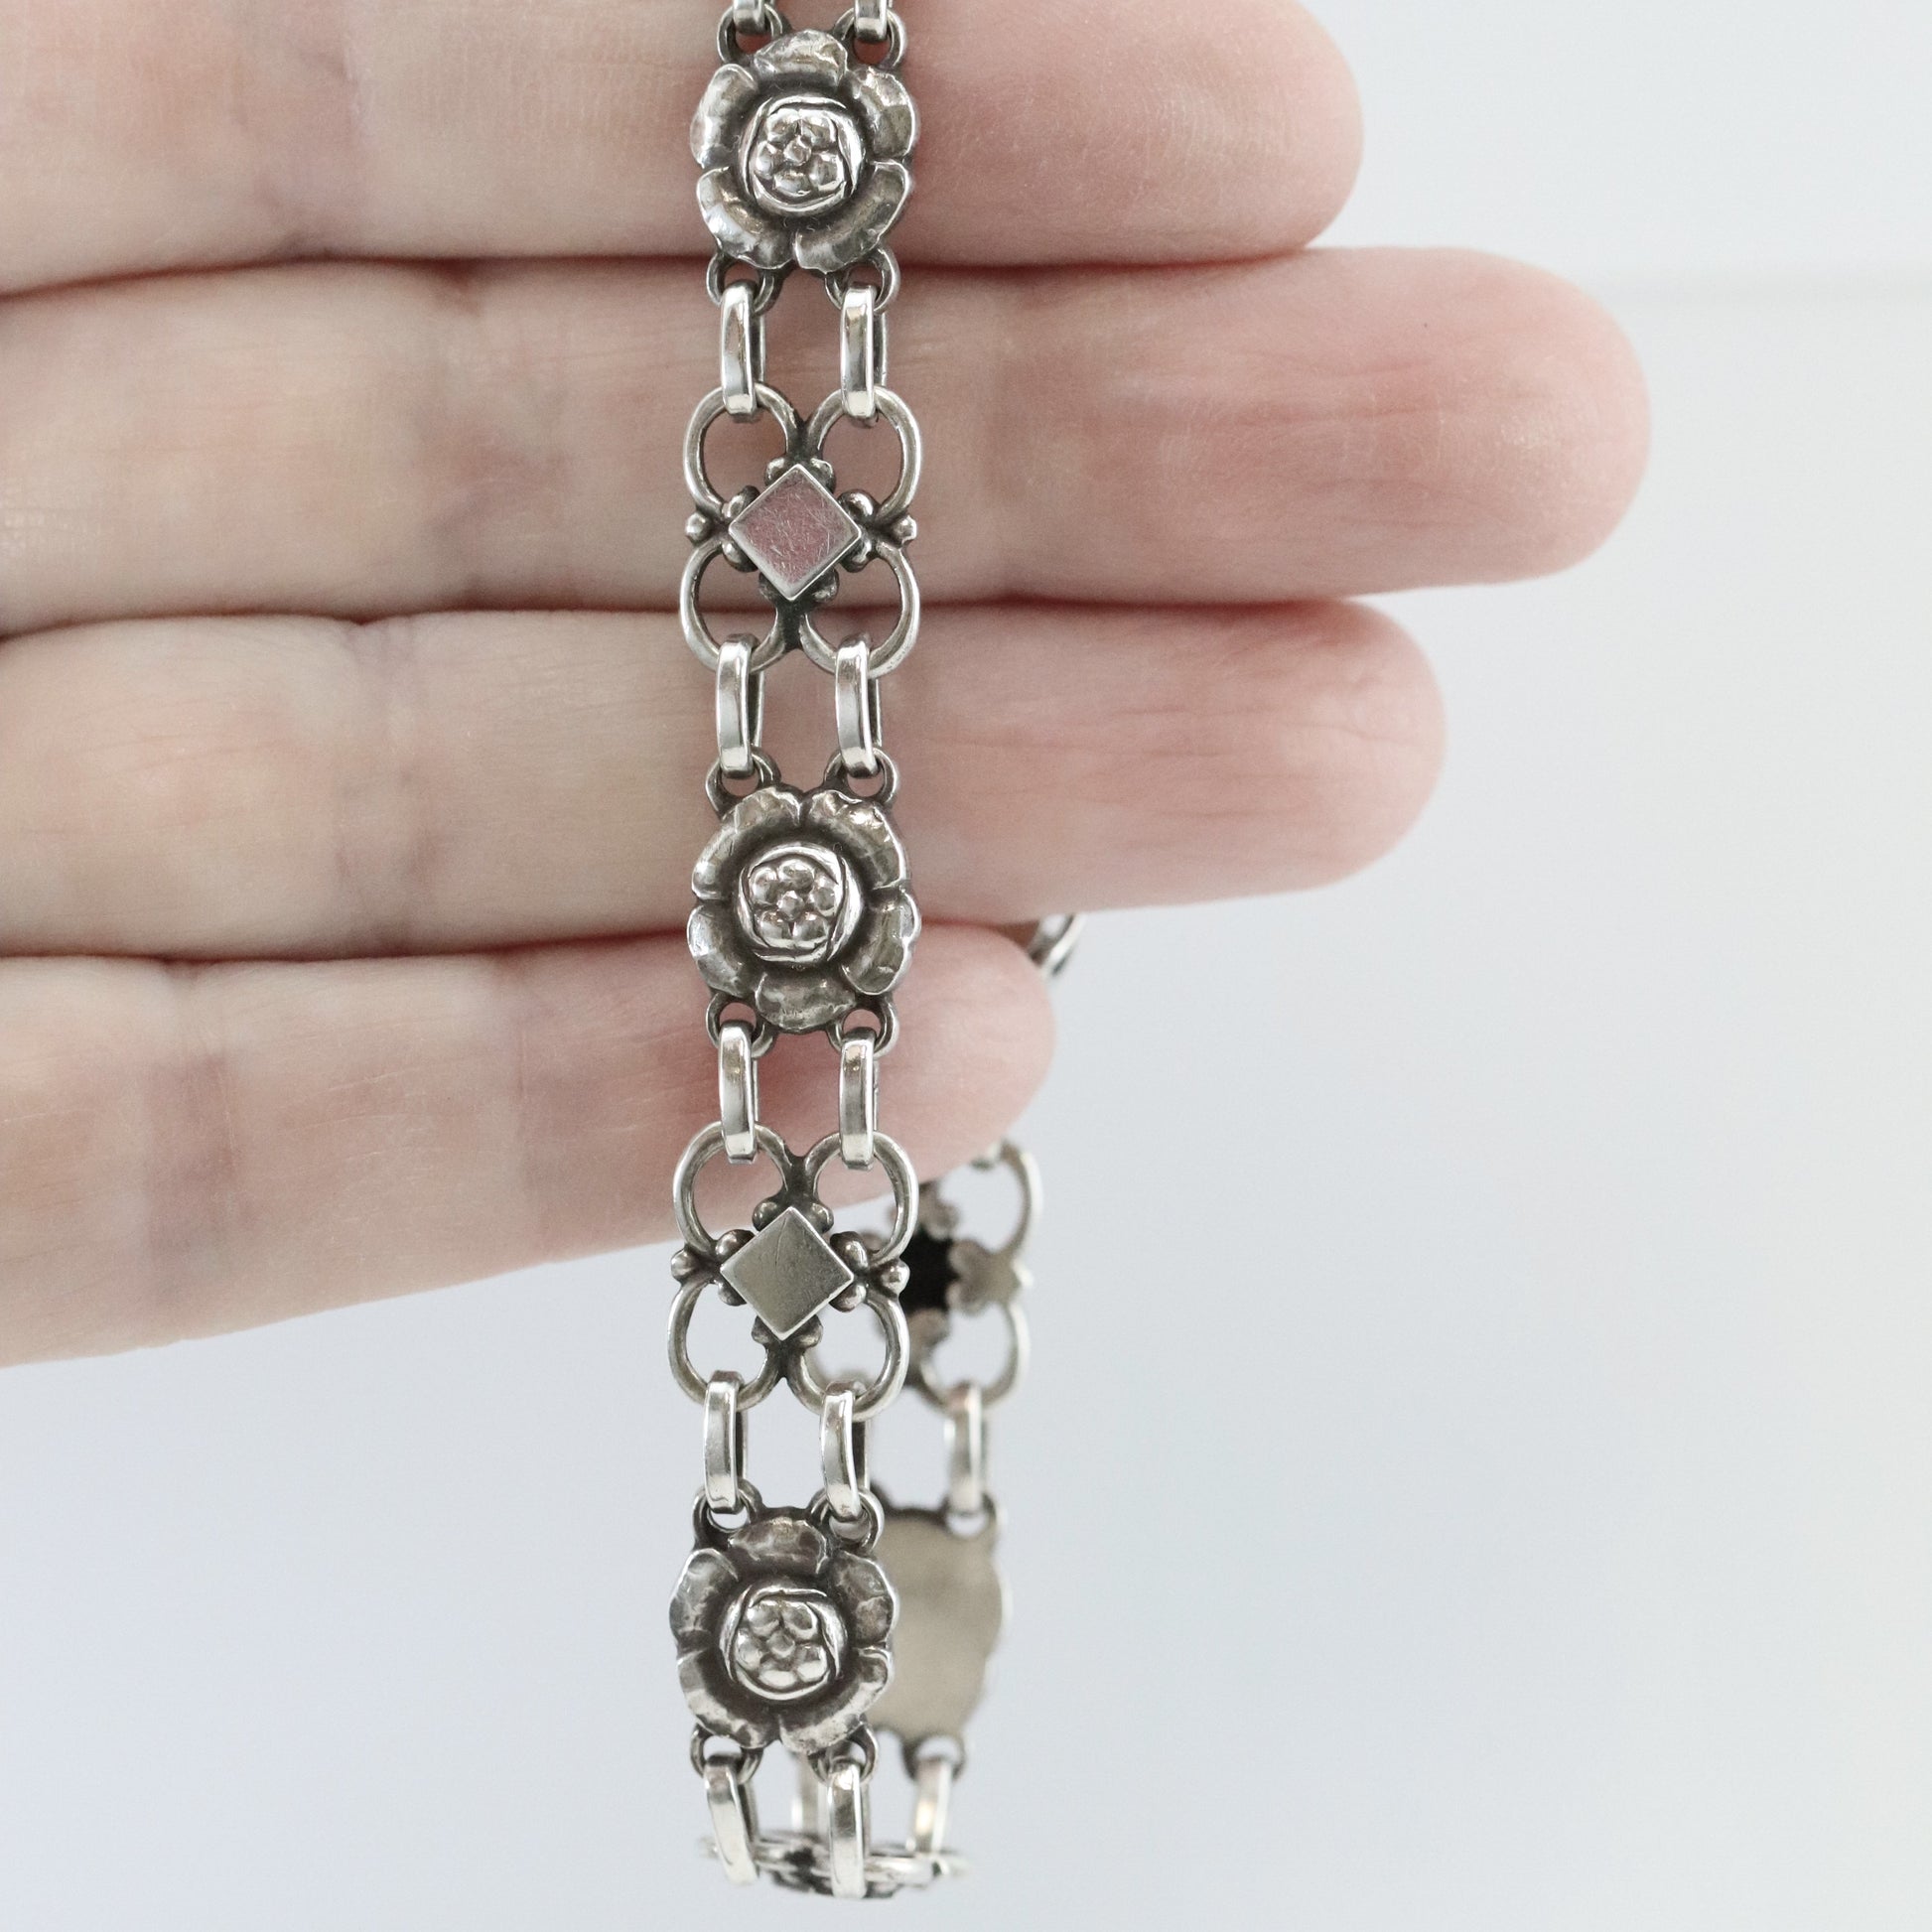 Vintage Georg Jensen Jewelry | Art Nouveau Floral Bracelet 50 - Carmel Fine Silver Jewelry